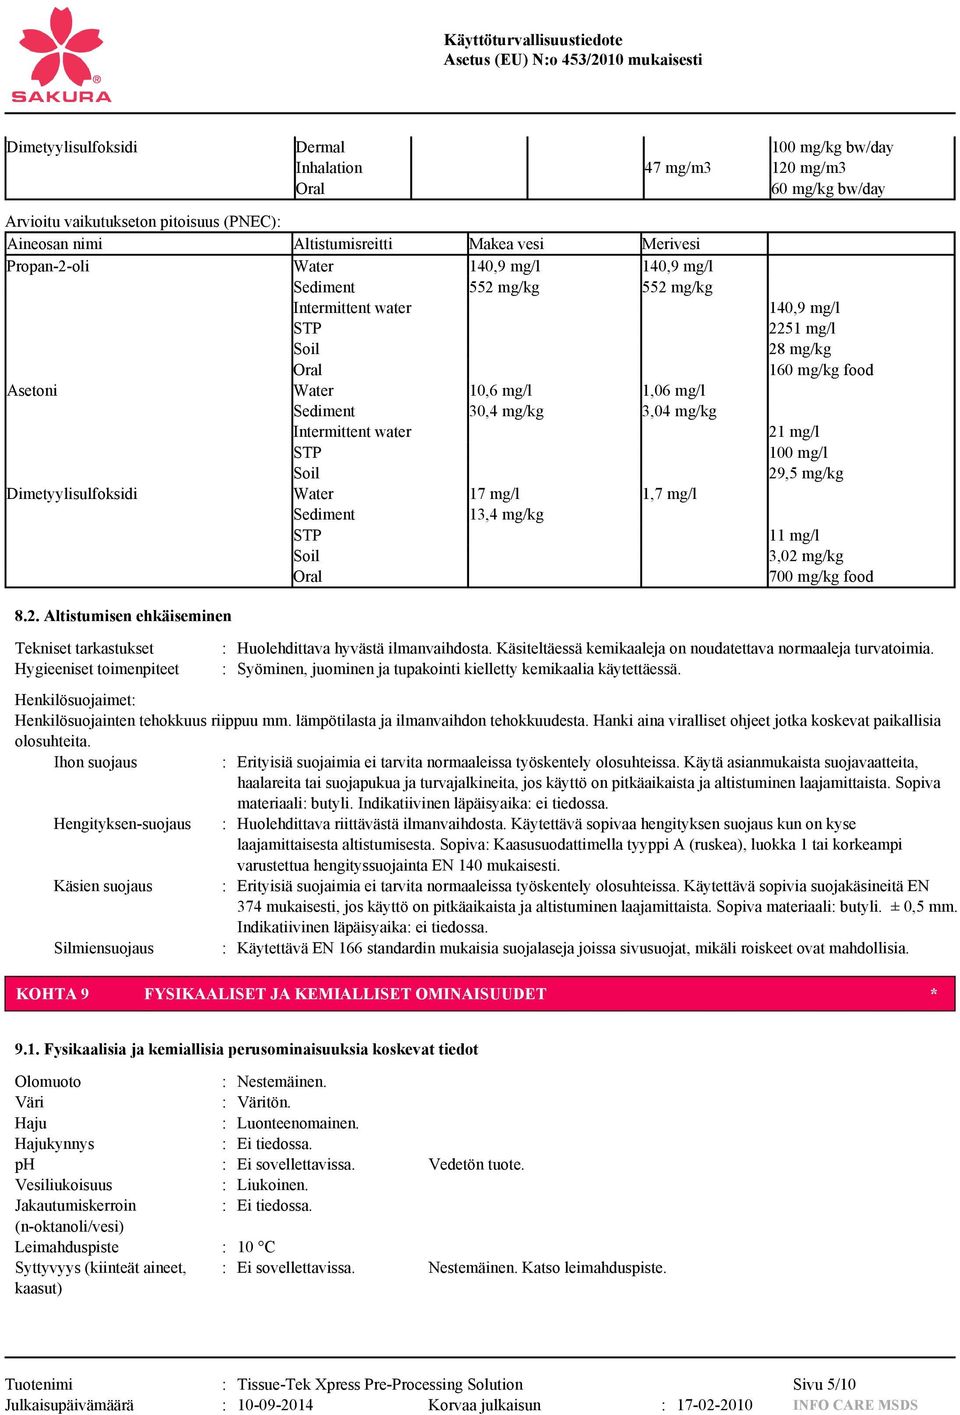 Dimetyylisulfoksidi Water 17 mg/l 1,7 mg/l Sediment 13,4 mg/kg STP Soil Oral 140,9 mg/l 22